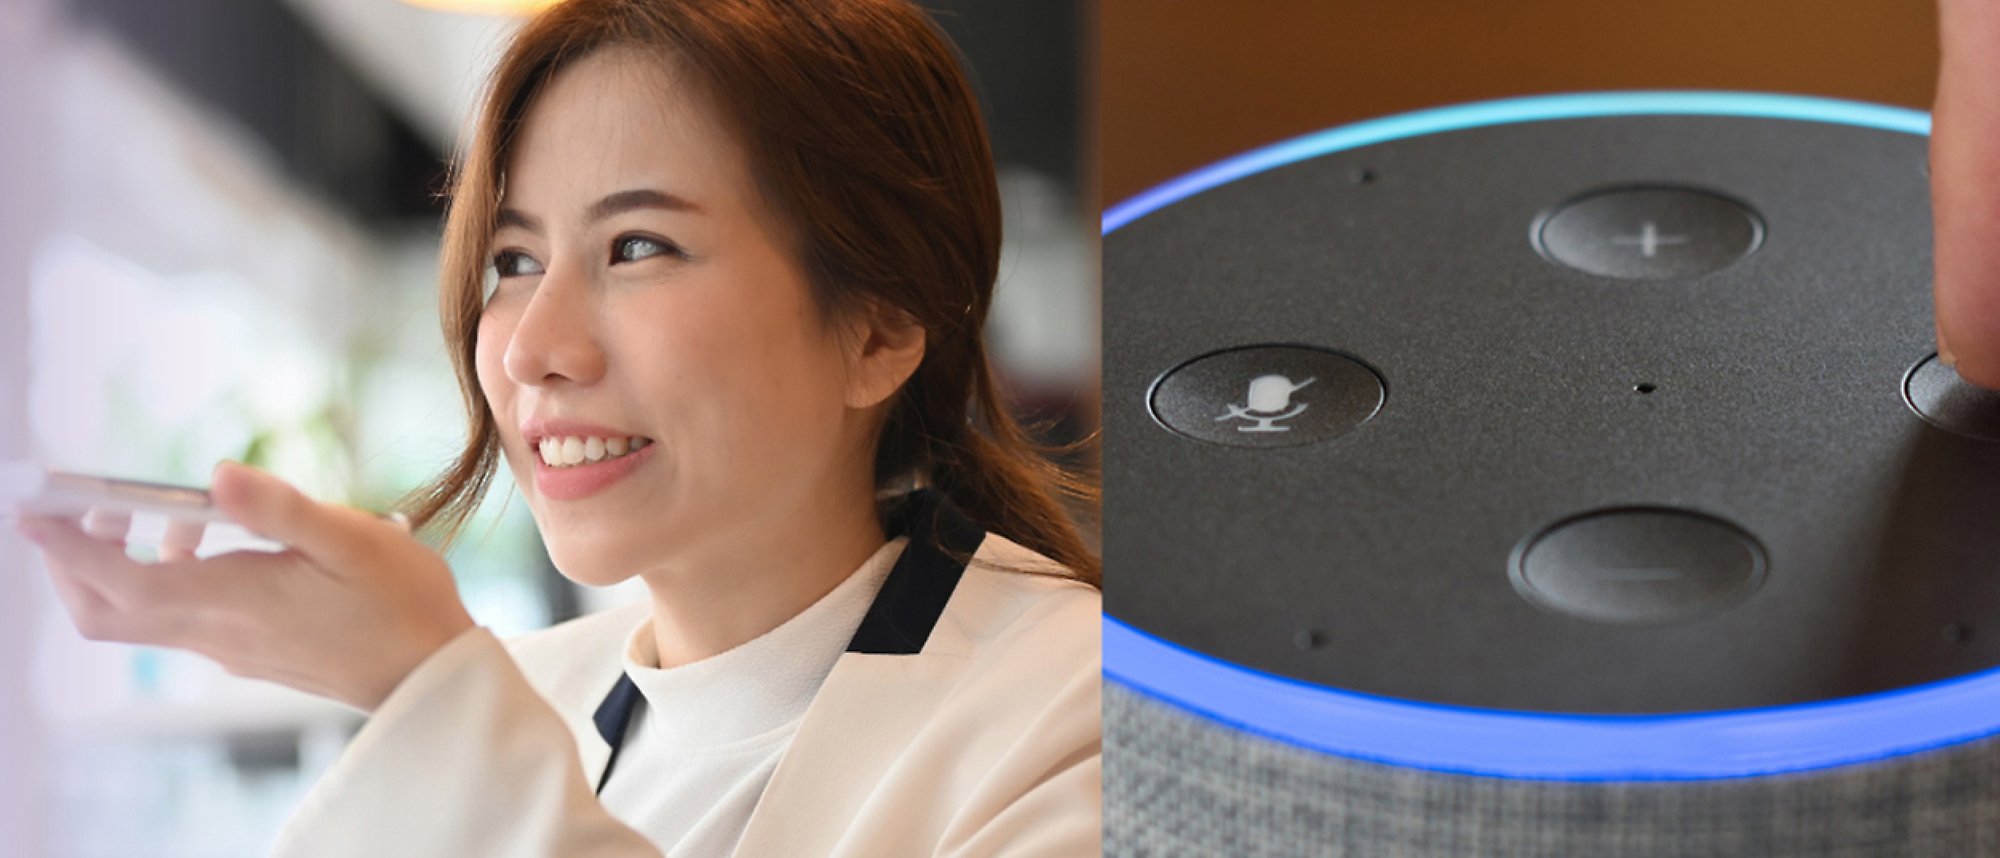 Eine Frau, die am Telefon spricht, und ein Bild von Amazon Alexa mit blauen Lichtern und den Soundsteuerelementen